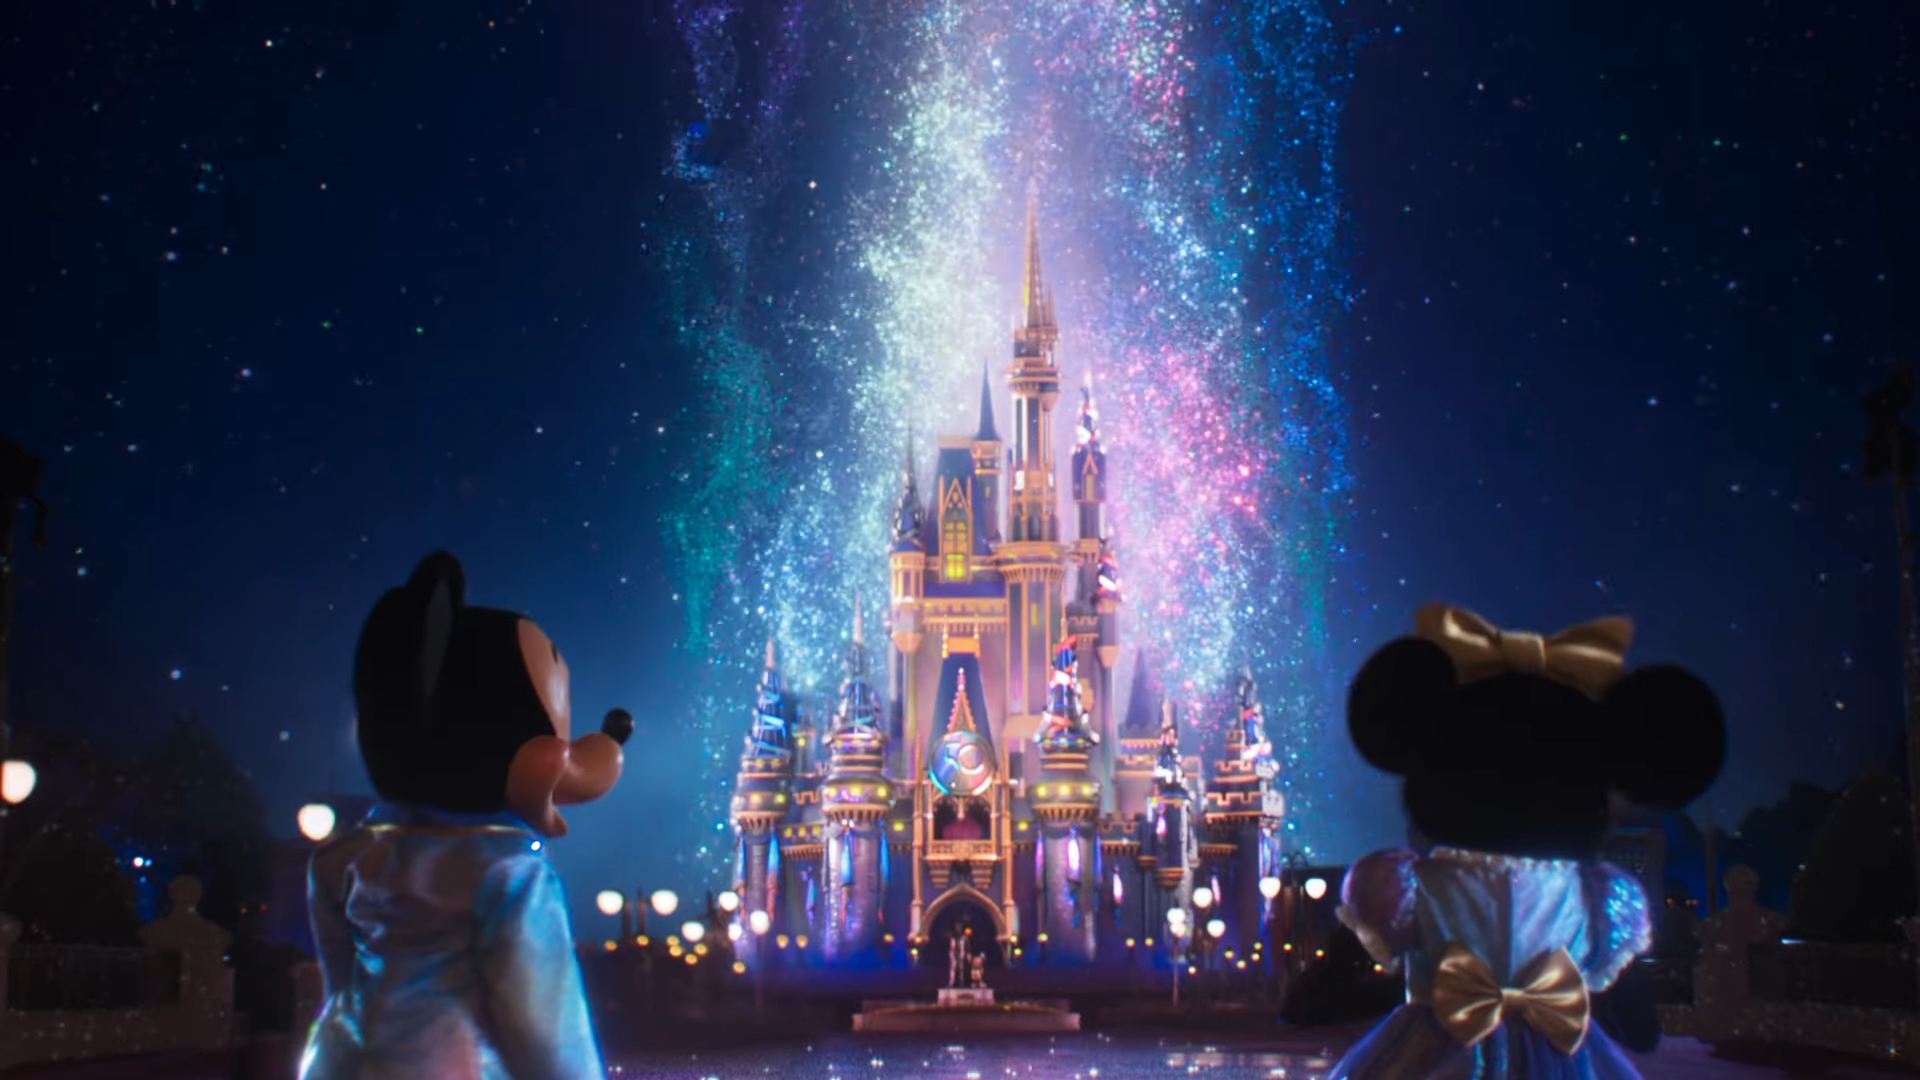 Đừng bỏ lỡ cơ hội xem quảng cáo ấn tượng dành cho kỷ niệm 50 năm thành lập Walt Disney World! Tận hưởng bầu không khí yên bình, kế hoạch phấn khởi và những bí mật đầy hấp dẫn của khu vui chơi giải trí nổi tiếng này.